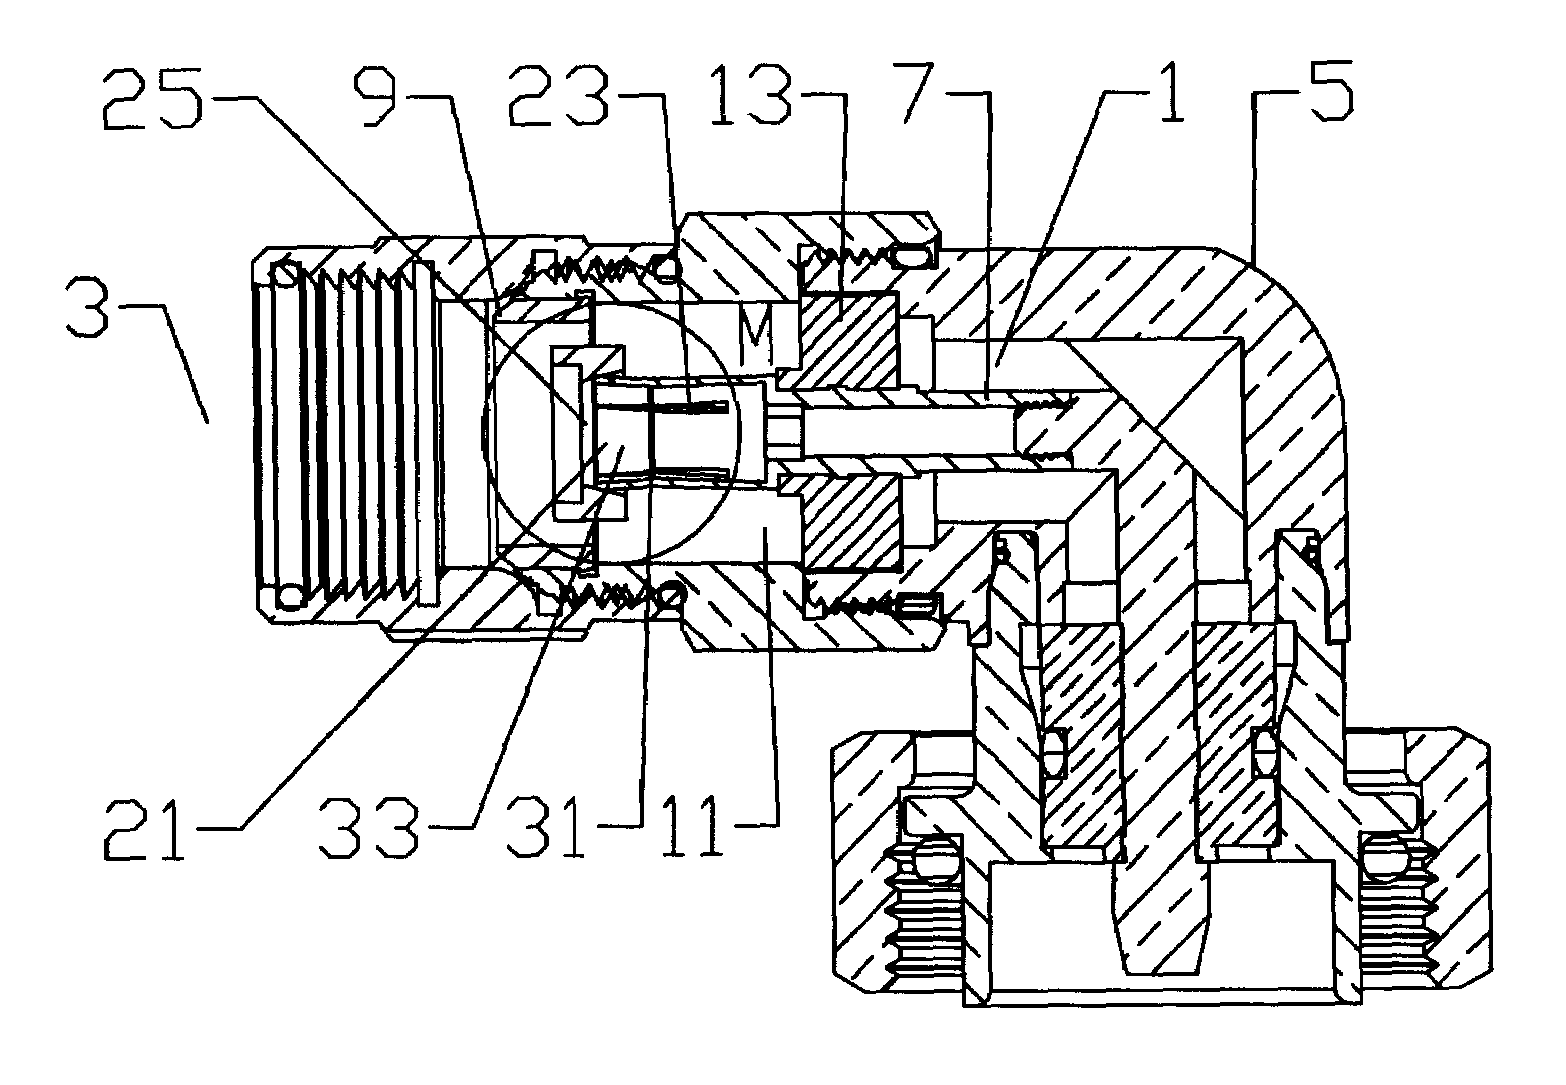 Coaxial connector inner contact arrangement